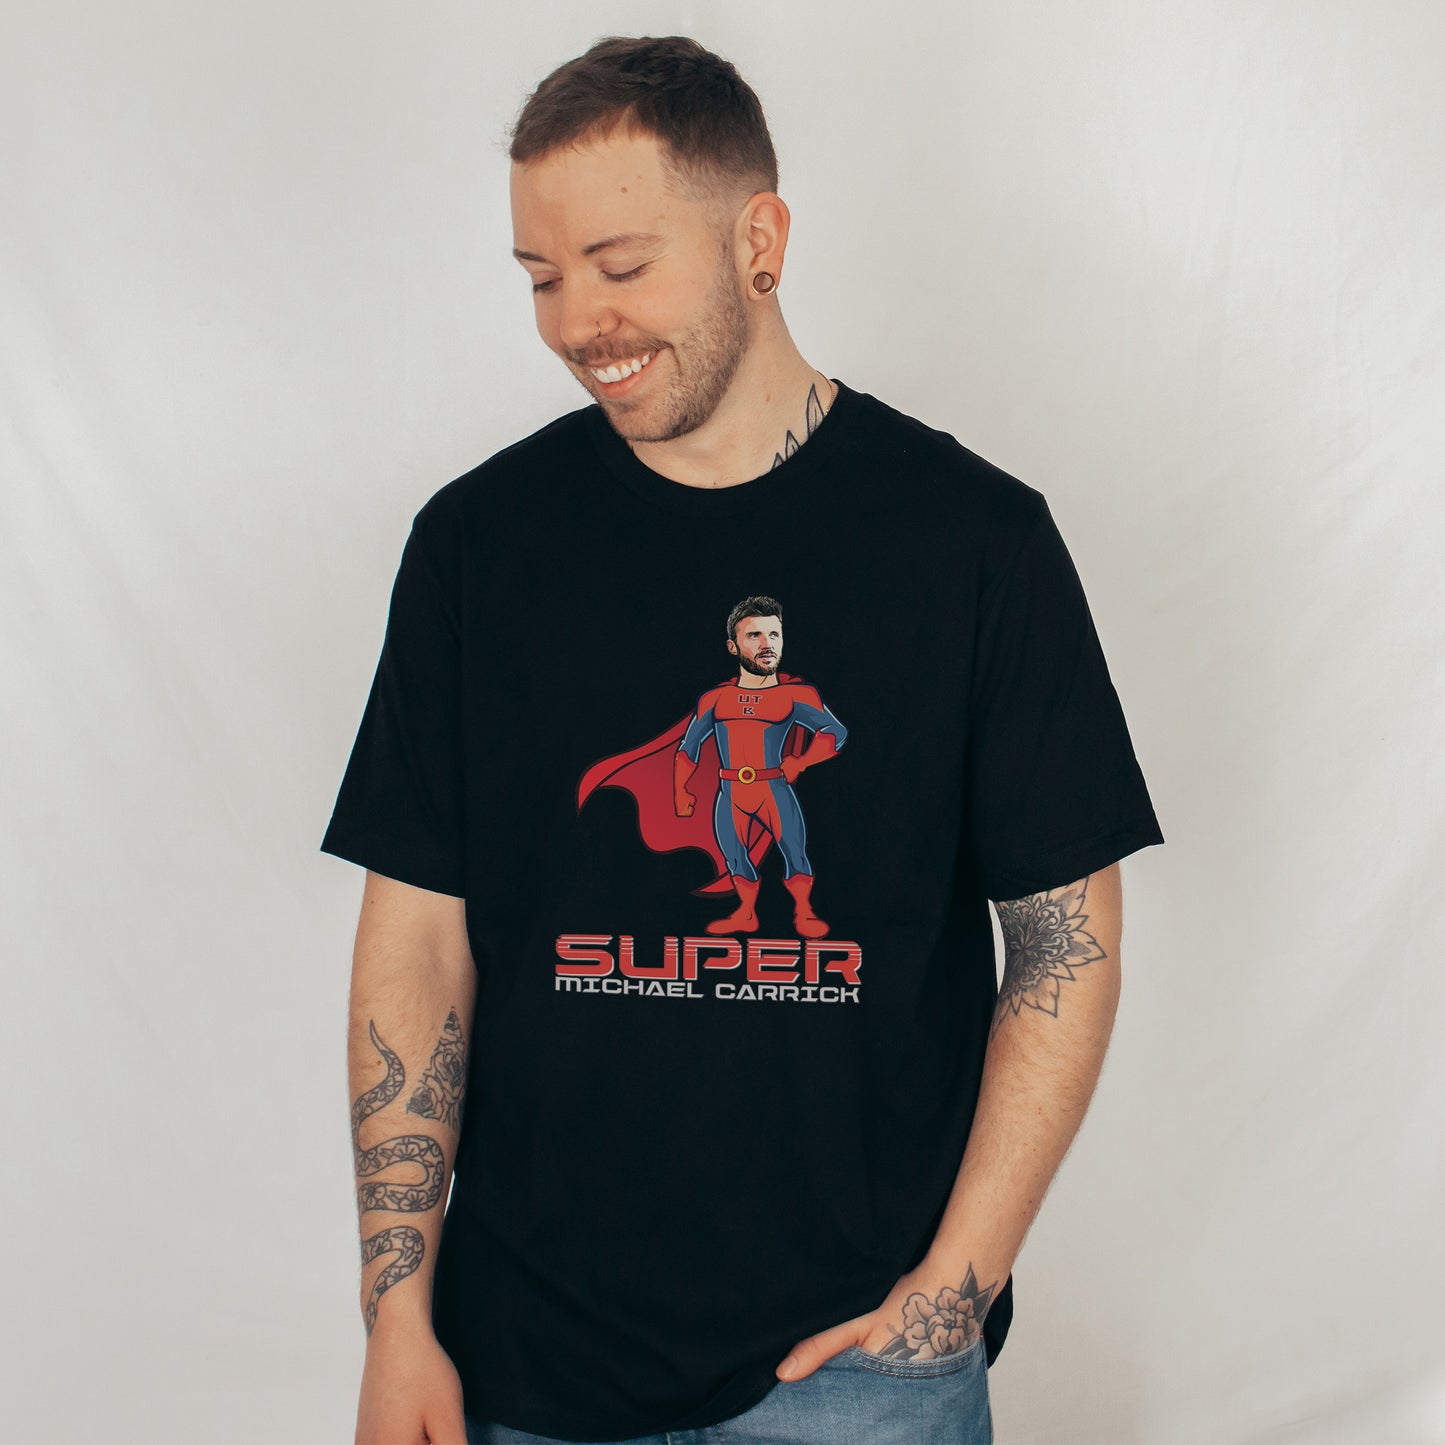 Super Michael Carrick T-Shirt